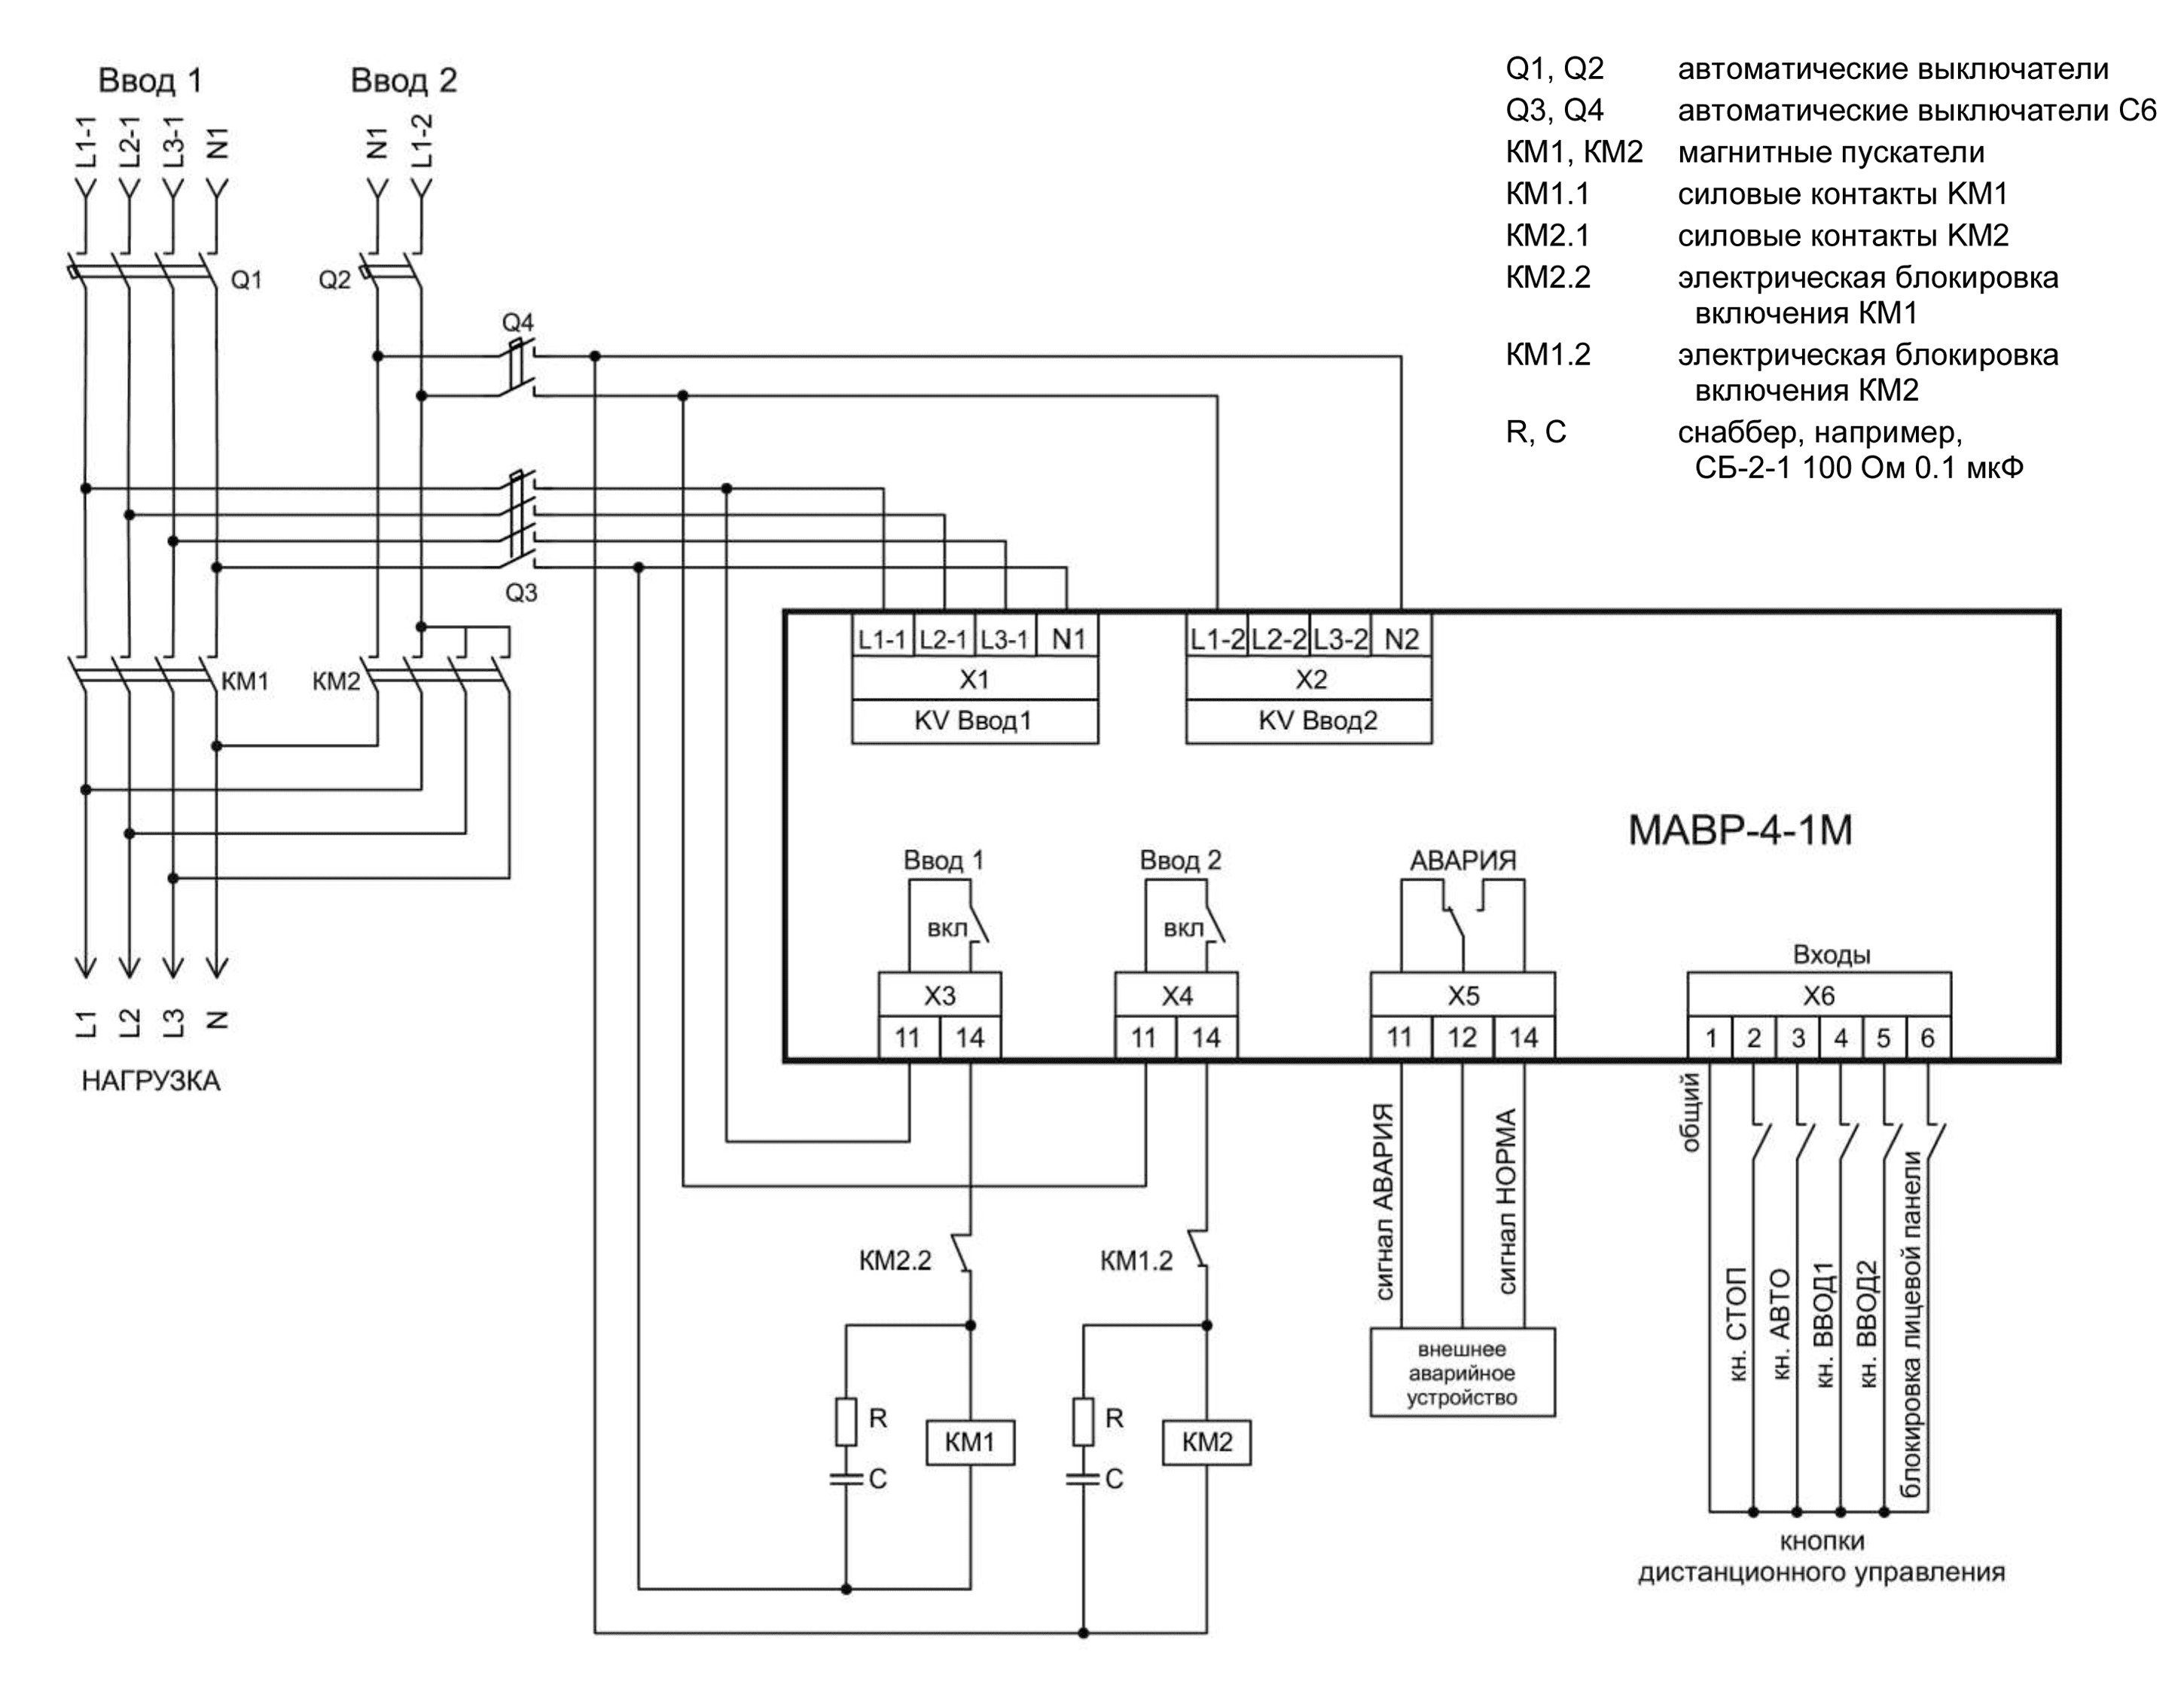 Схема АВР на магнитных пускателях 3-х фазный ввод и 1 фазный ввод МАВР-4-1М